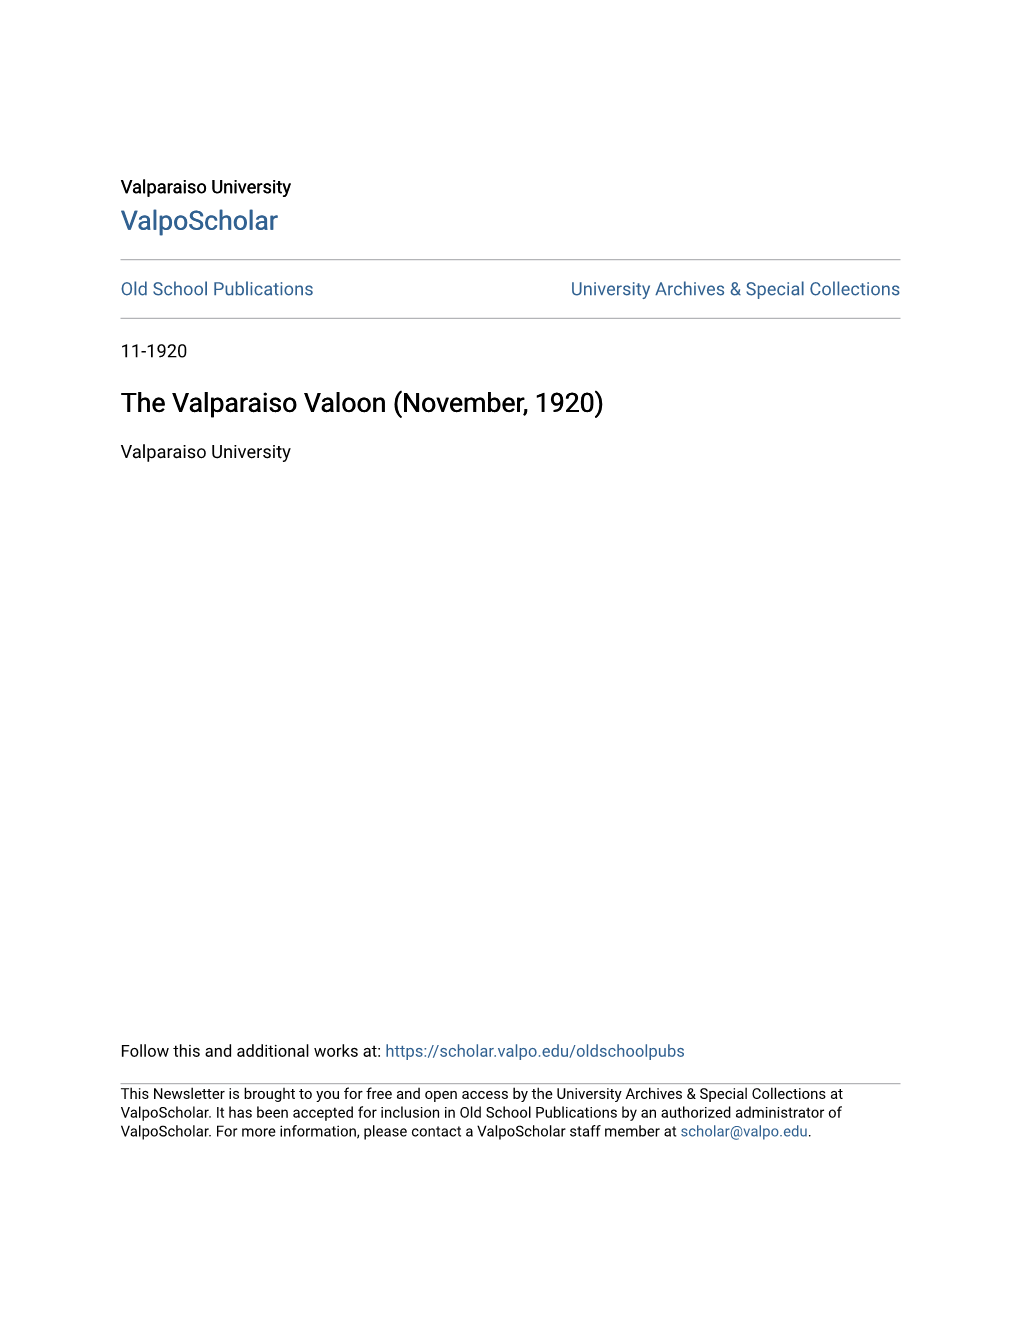 The Valparaiso Valoon (November, 1920)